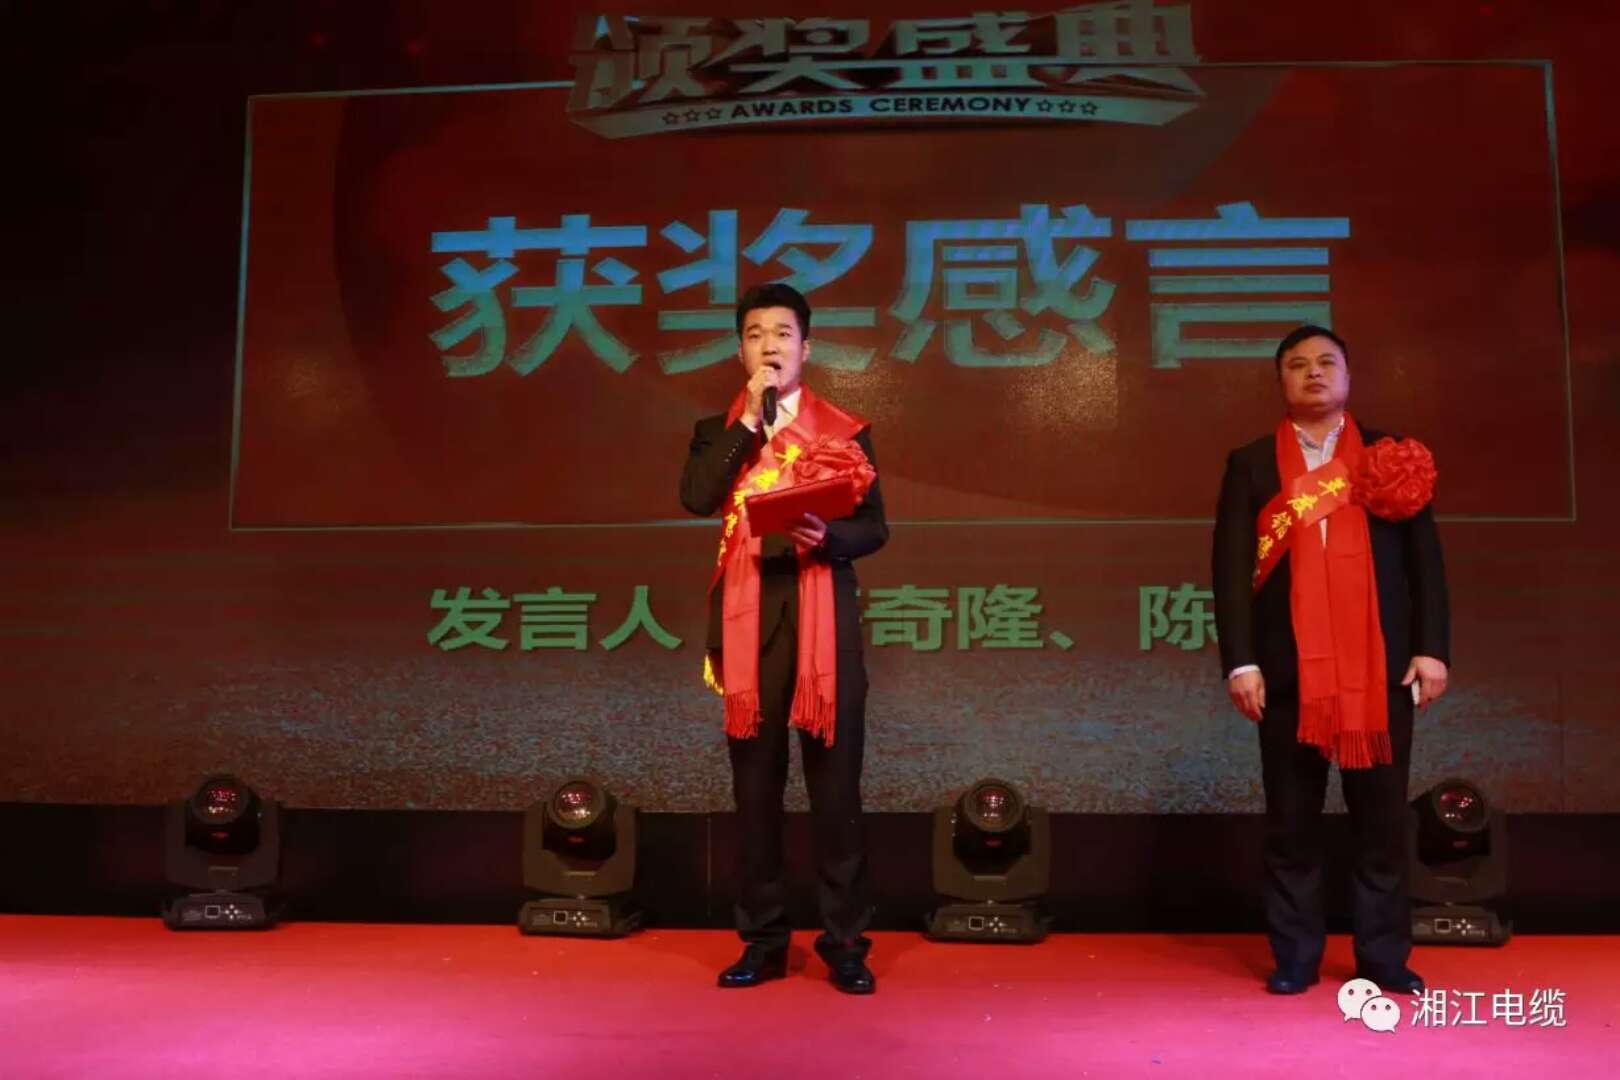 湘江电缆2018迎新暨表彰大会